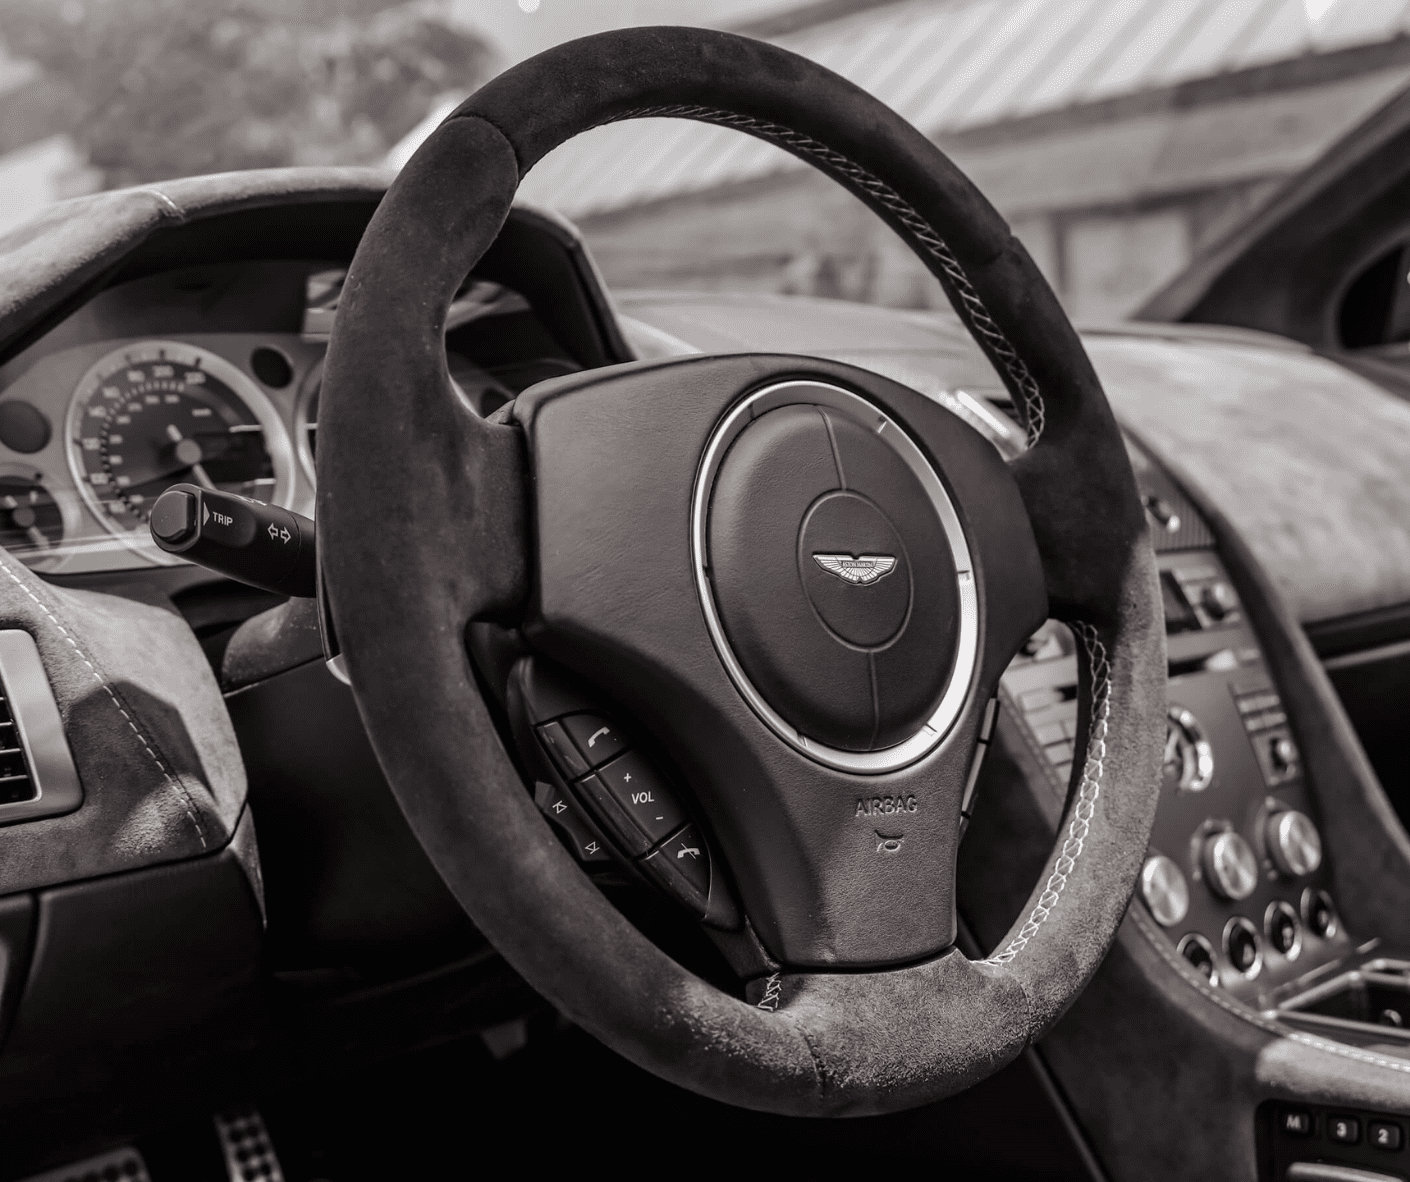 Steering wheel upholstery in Alcantara